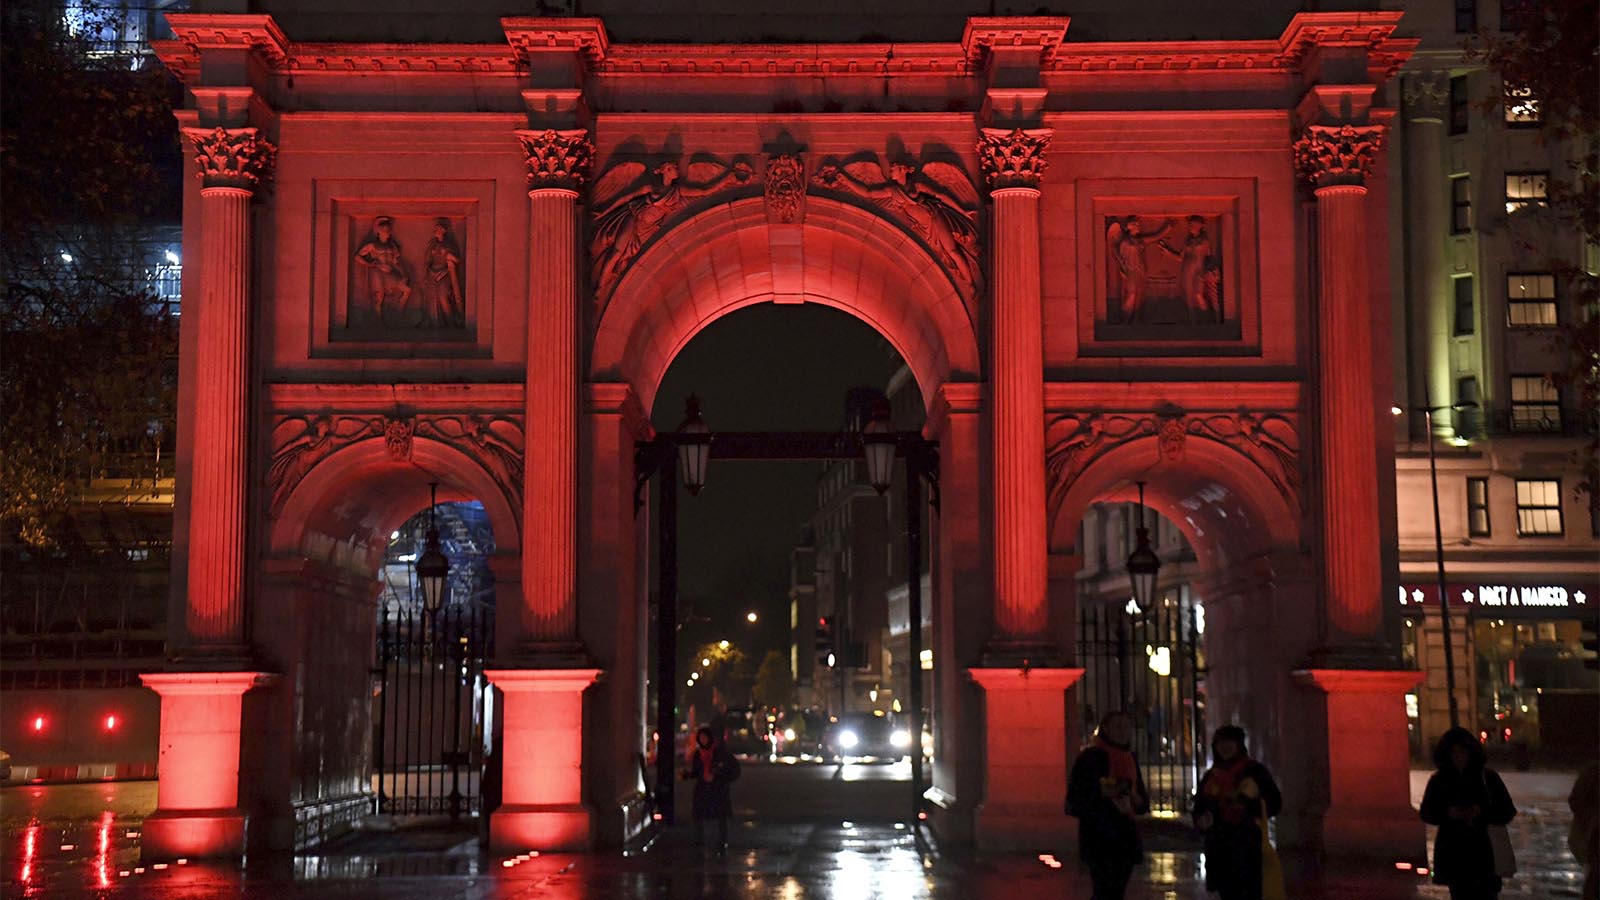 מרבל ארץ' בלונדון מוארת במחאה על האלימות כנגד נשים. ברחבי העולם אתרים מרכזיים הוארו במנורות בצבע אדום כחלק מיום המאבק הבינלאומי (Kirsty O'Connor/PA via AP)